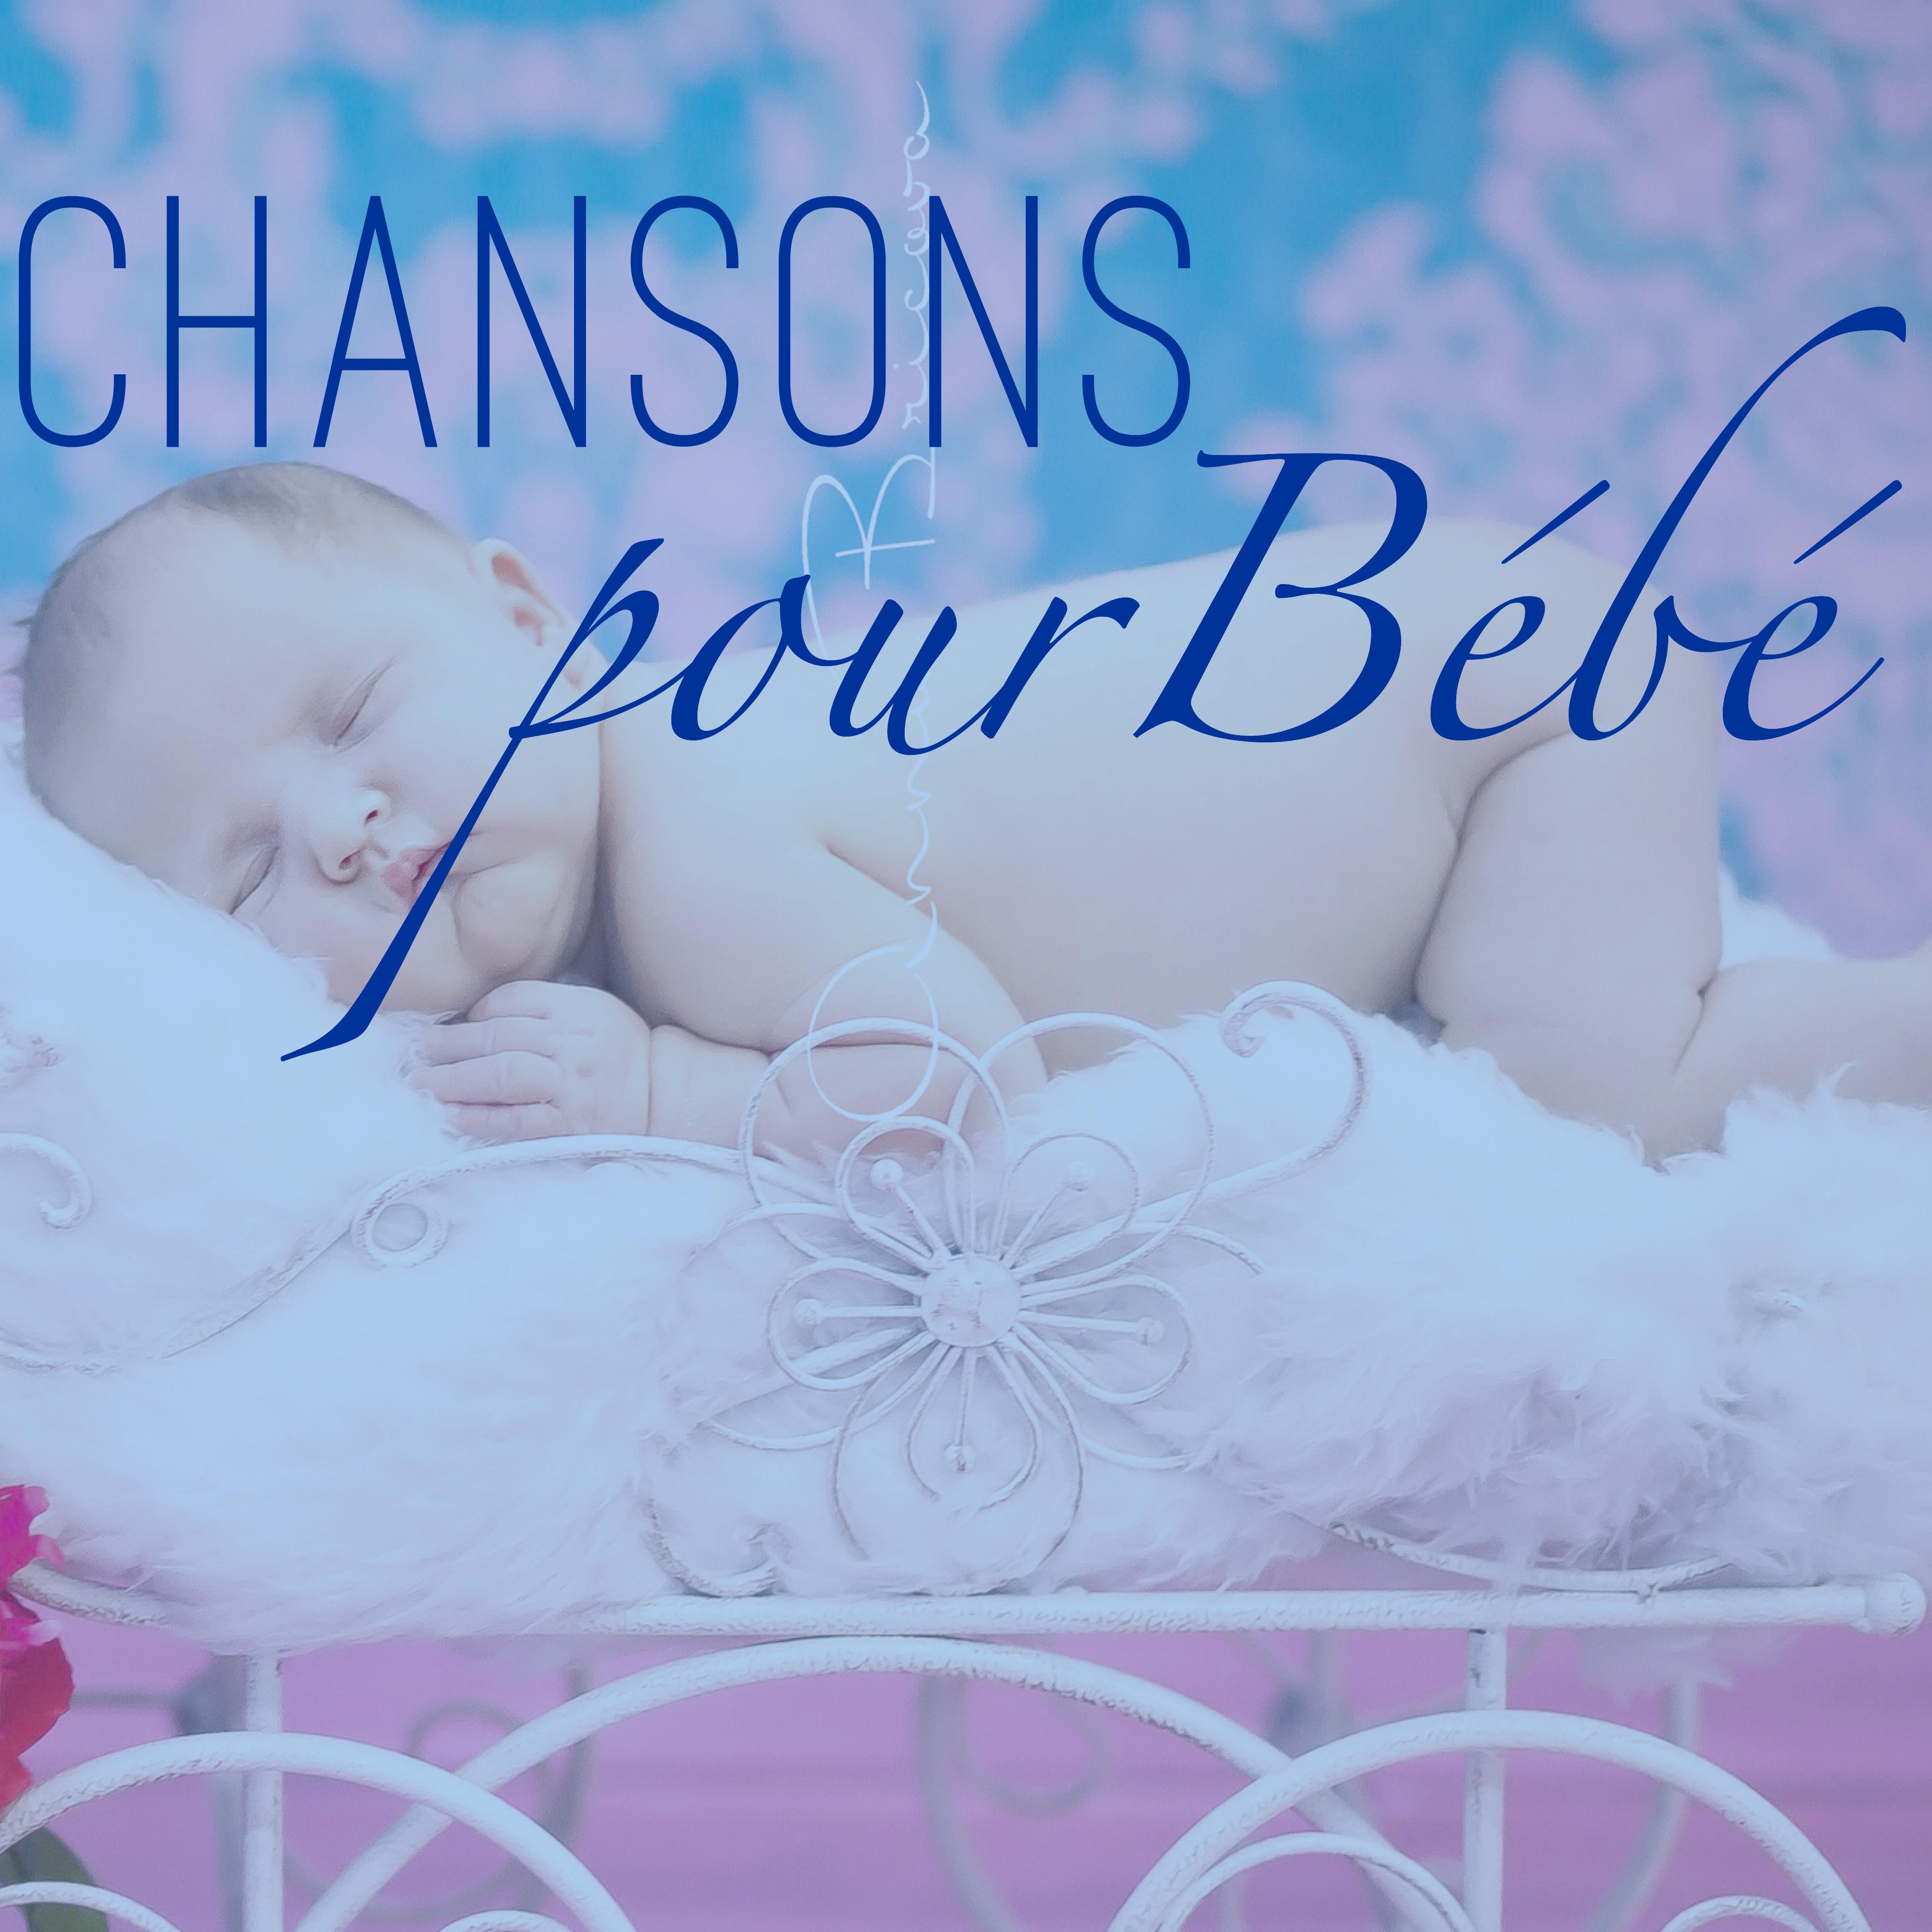 Chansons pour Be be  Sophrologie pour Enfants: Berceuses Be be pour Relaxation, Dormir Sommeil Paisible et Me ditation